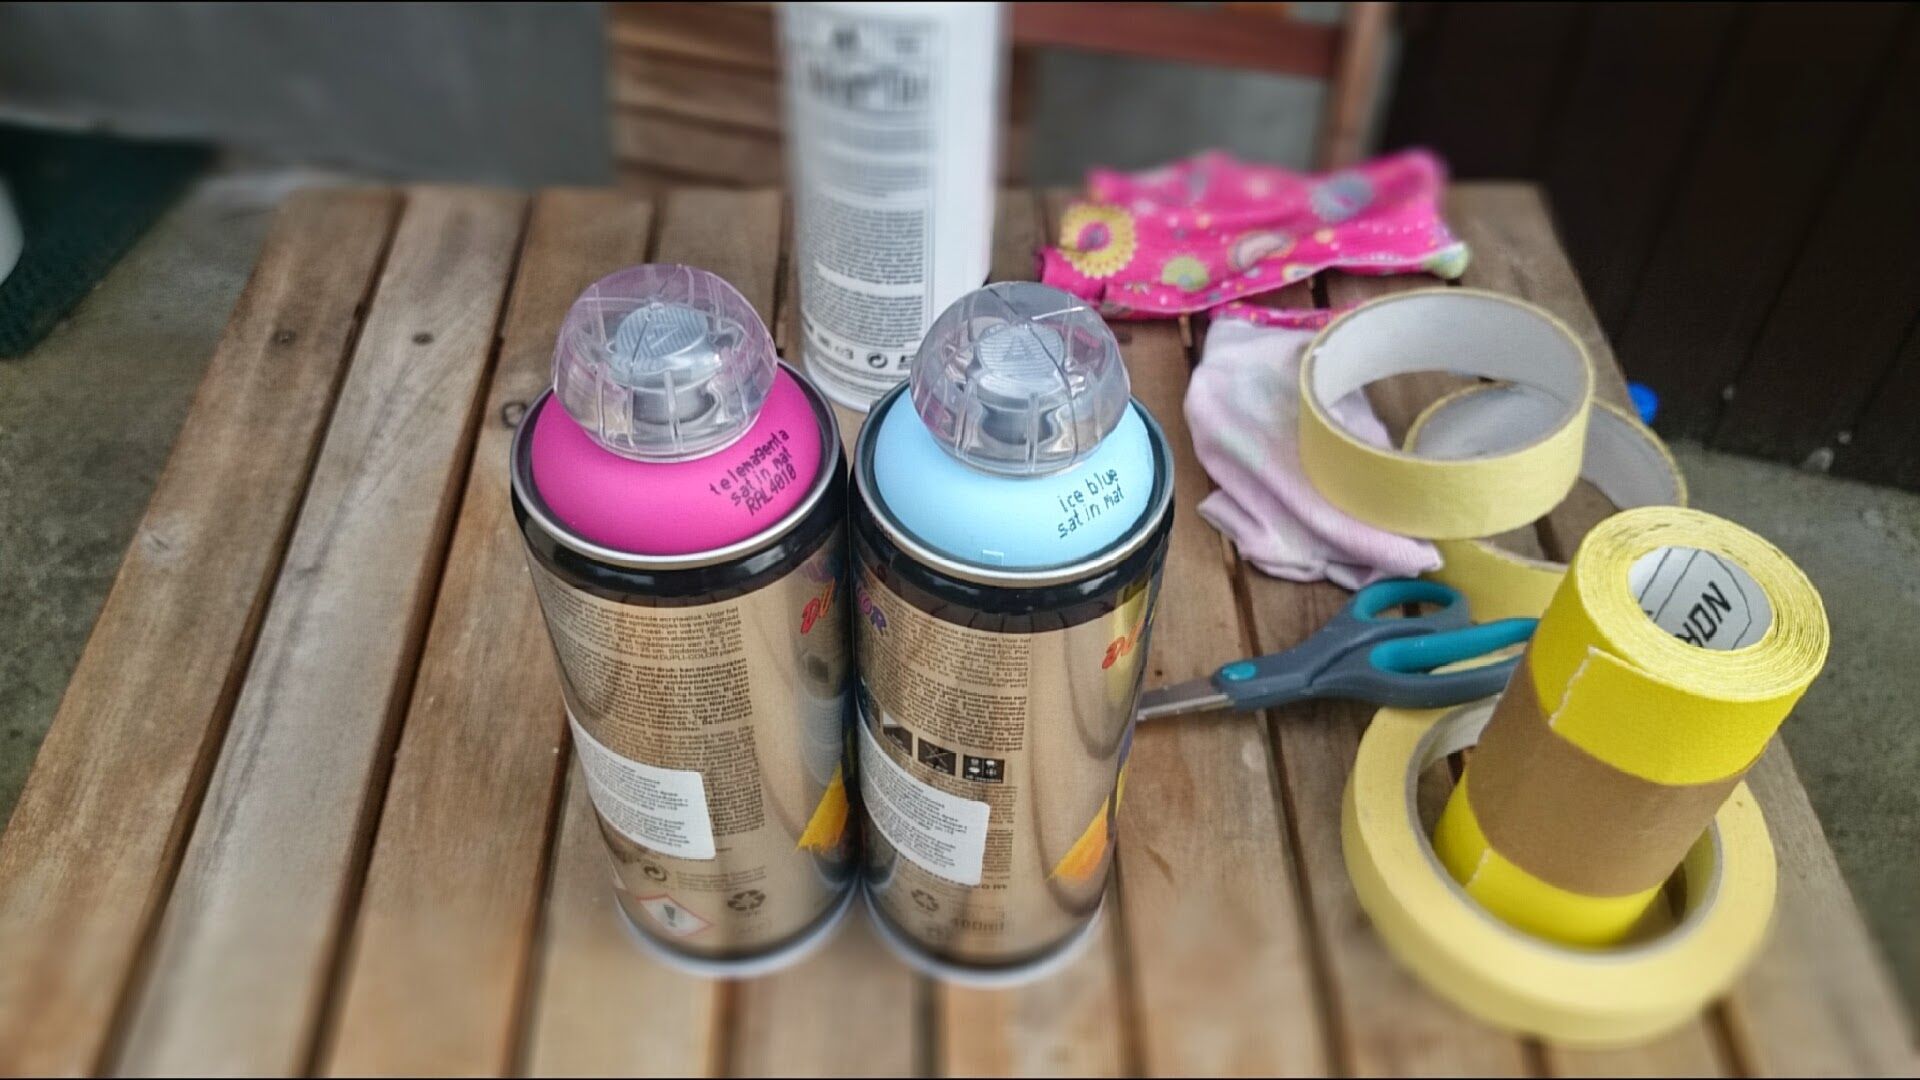 Farba akrylowa w sprayu to rozwiązanie dobre dla osób niemających czasu. Malowanie nią jest łatwe, a sama farba bardzo szybko schnie. Fot. Refreshing